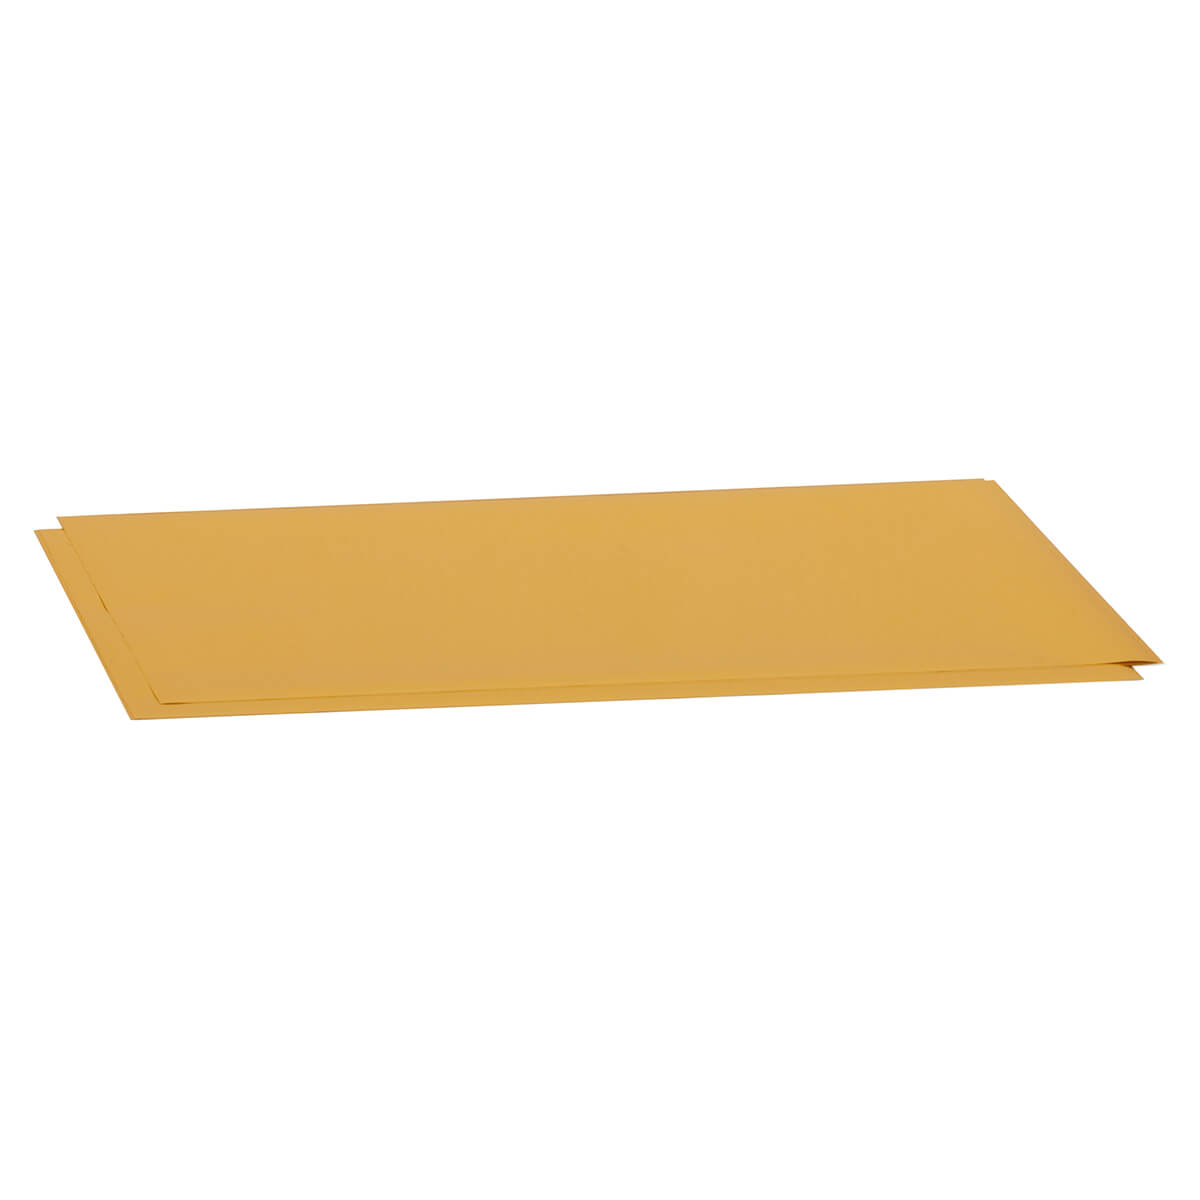 Schreibfolie gold 10 x 15 cm - Pack à 5 Blatt